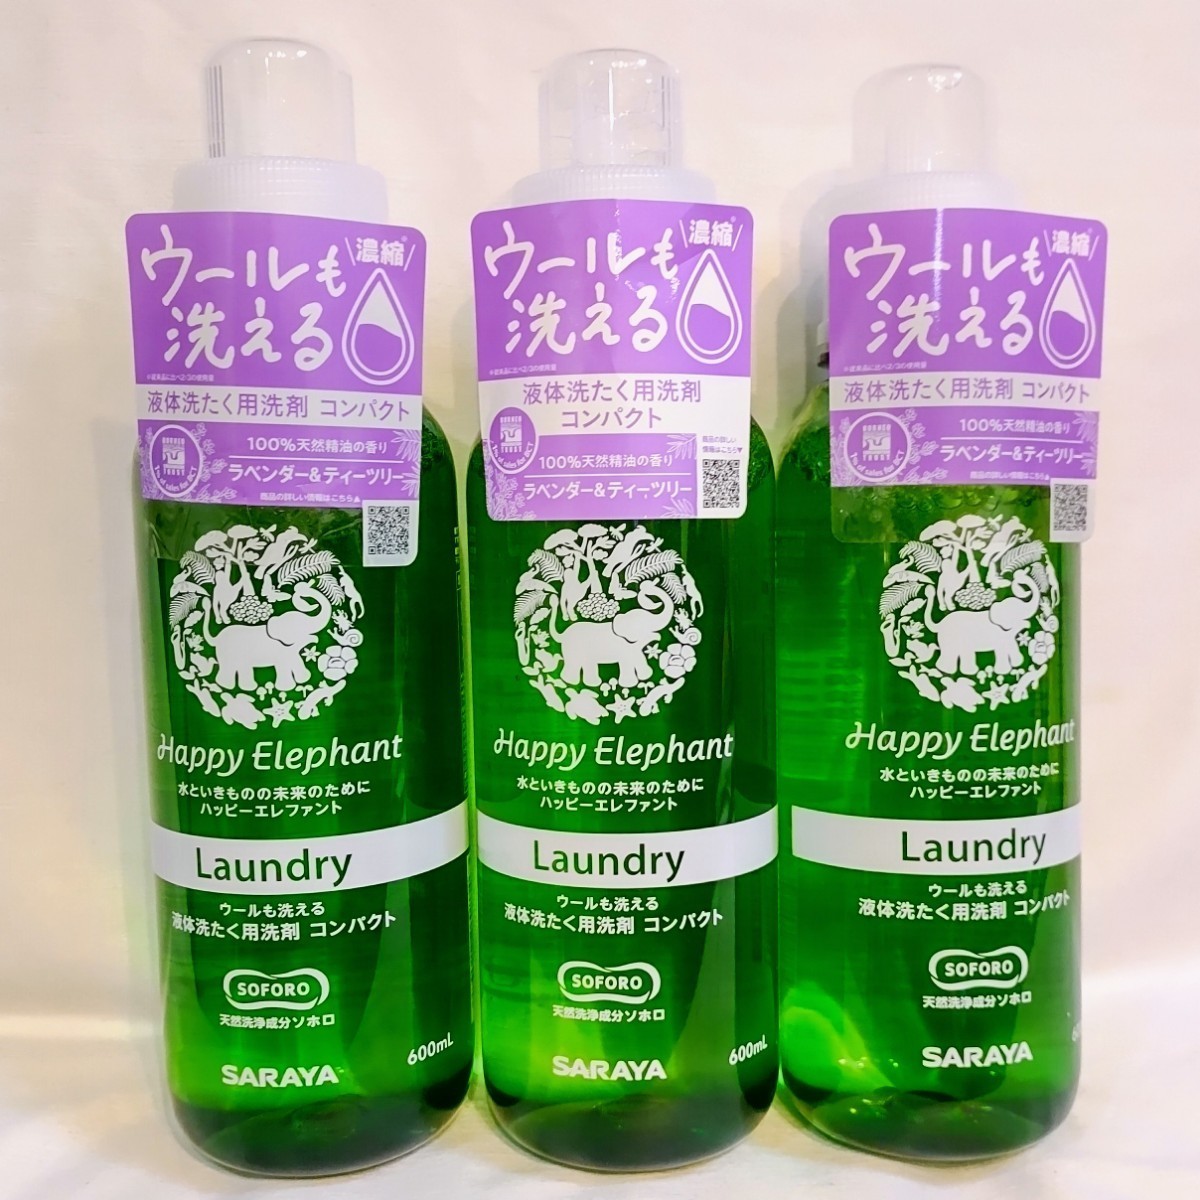 液体 洗たく用洗剤コンパクト 本体 ・ 洗たくパウダー 粉末洗剤 SARAYA